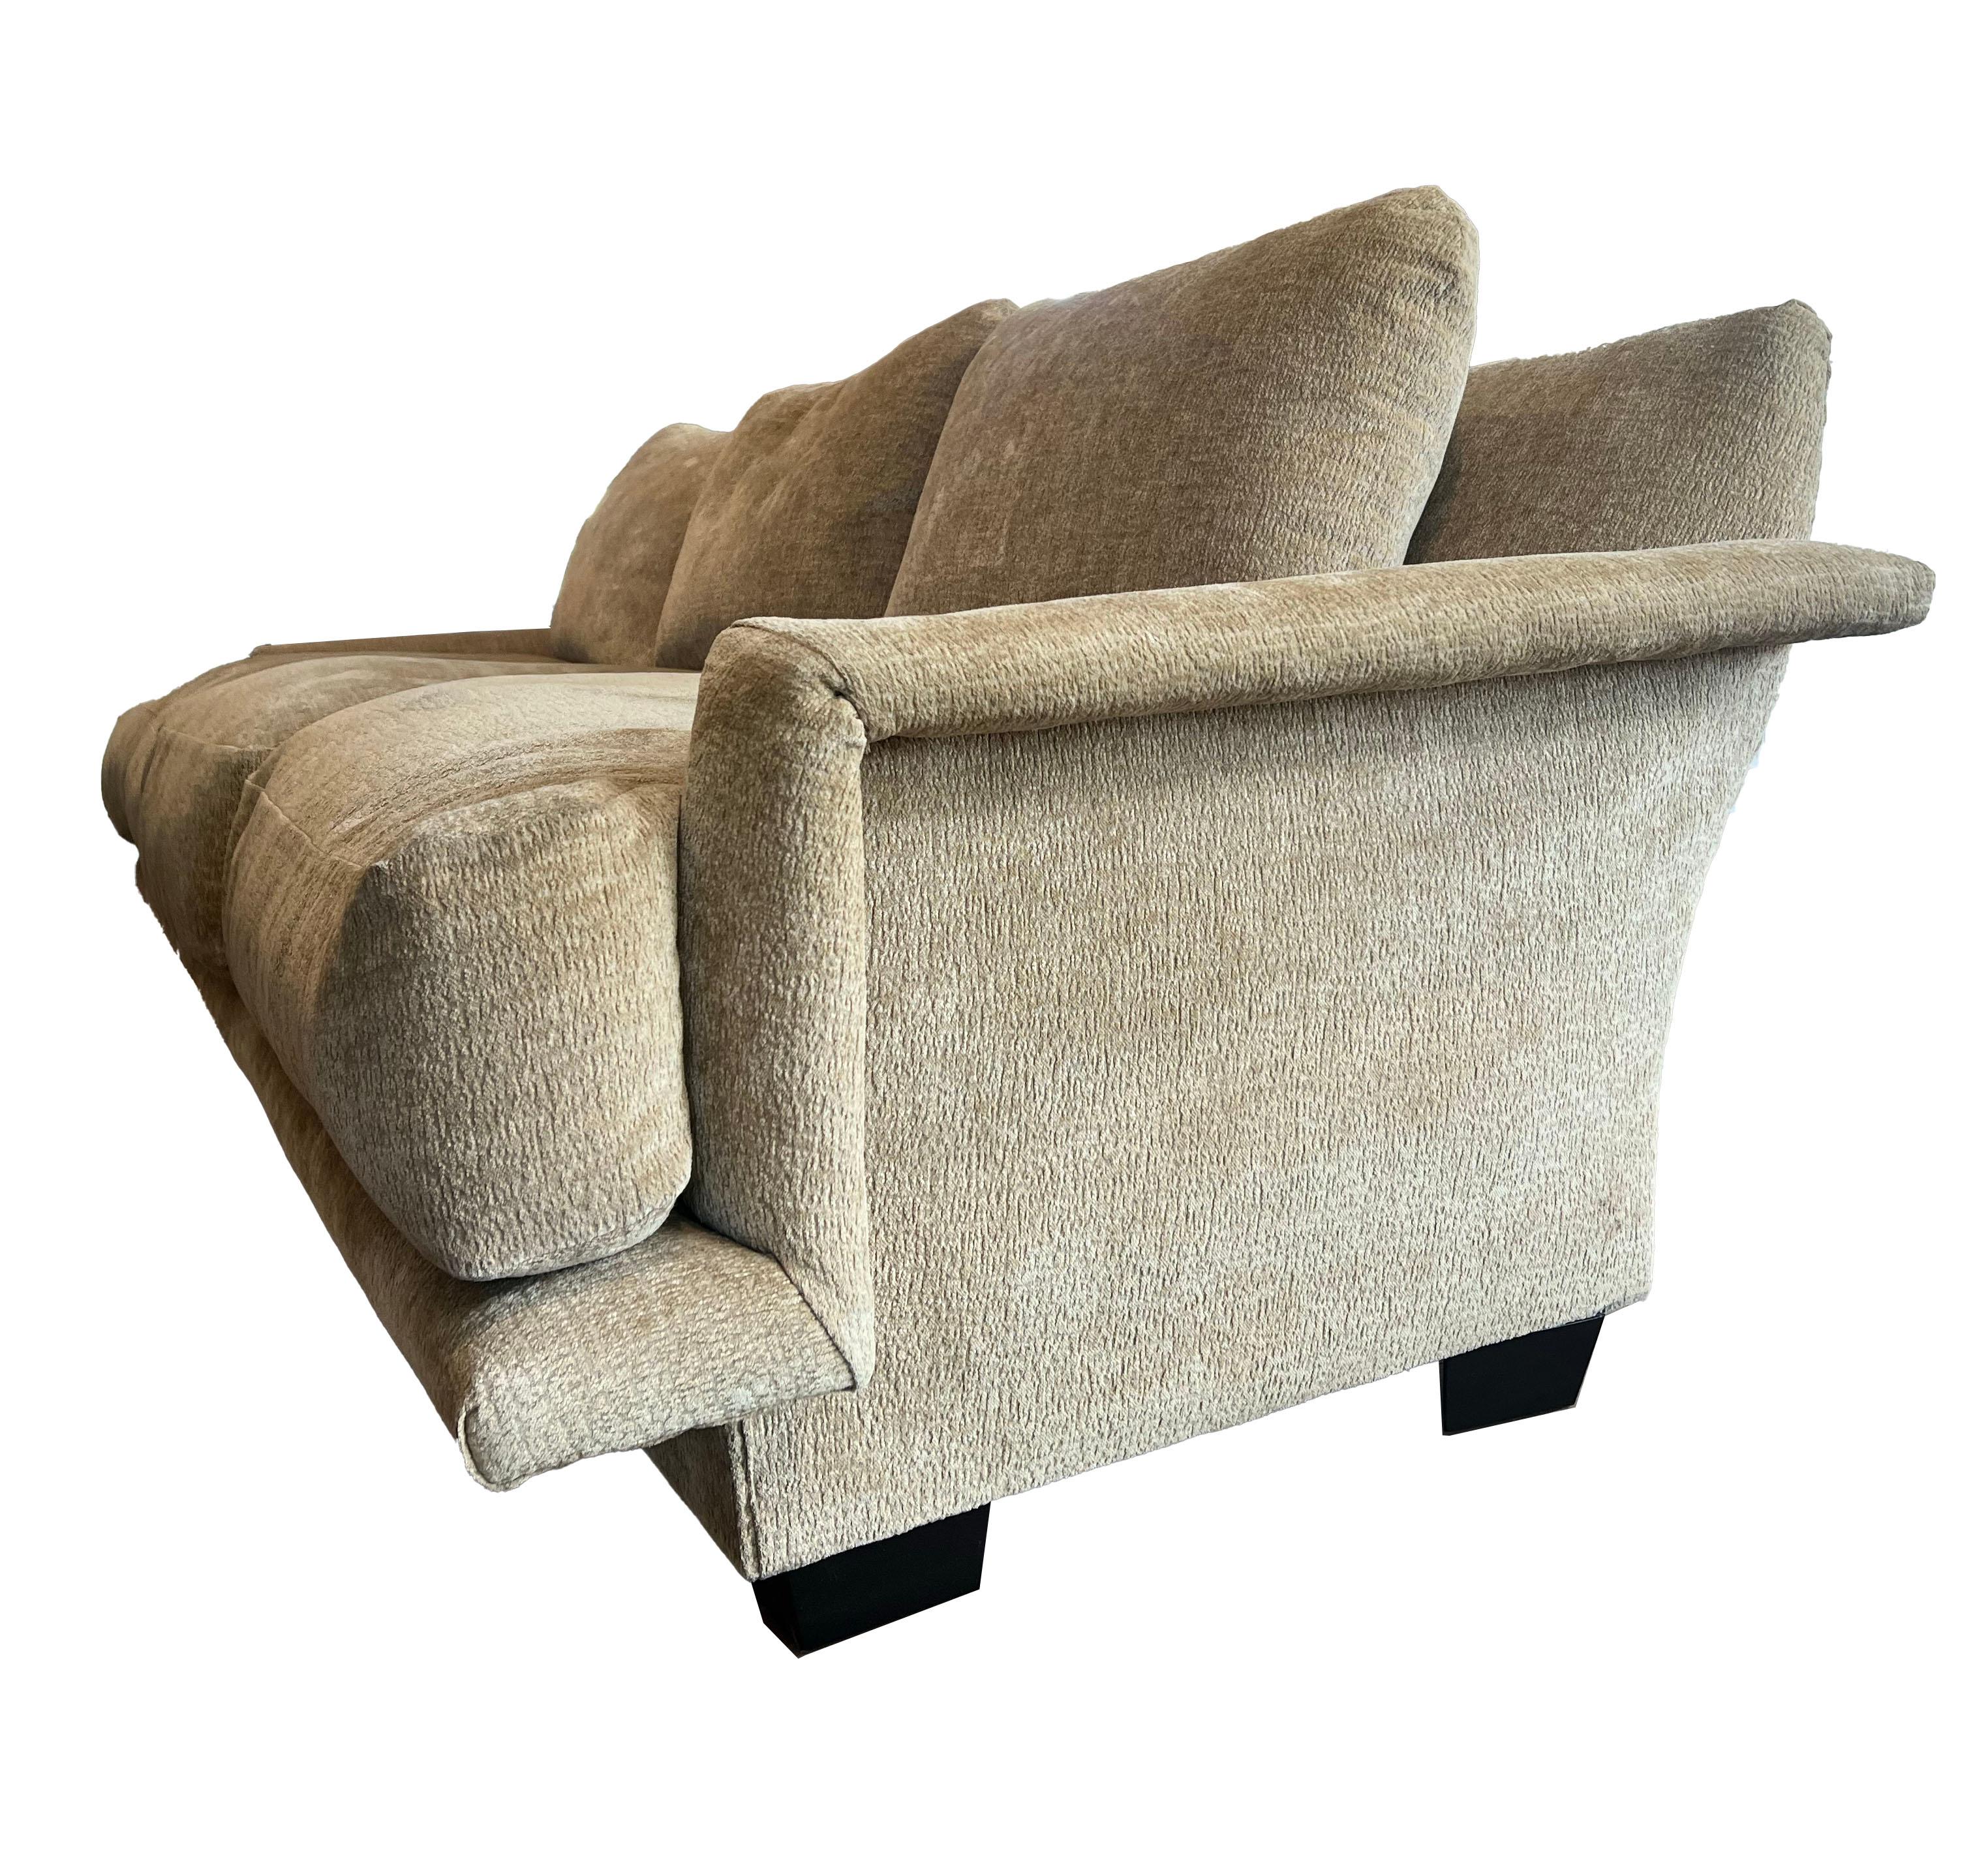 Voici l'incarnation de la sophistication - notre canapé 3 places en velours texturé beige, une fusion de confort et de design contemporain. Les coussins de dossier en peluche offrent une expérience d'assise indulgente. Les accoudoirs carrés et les